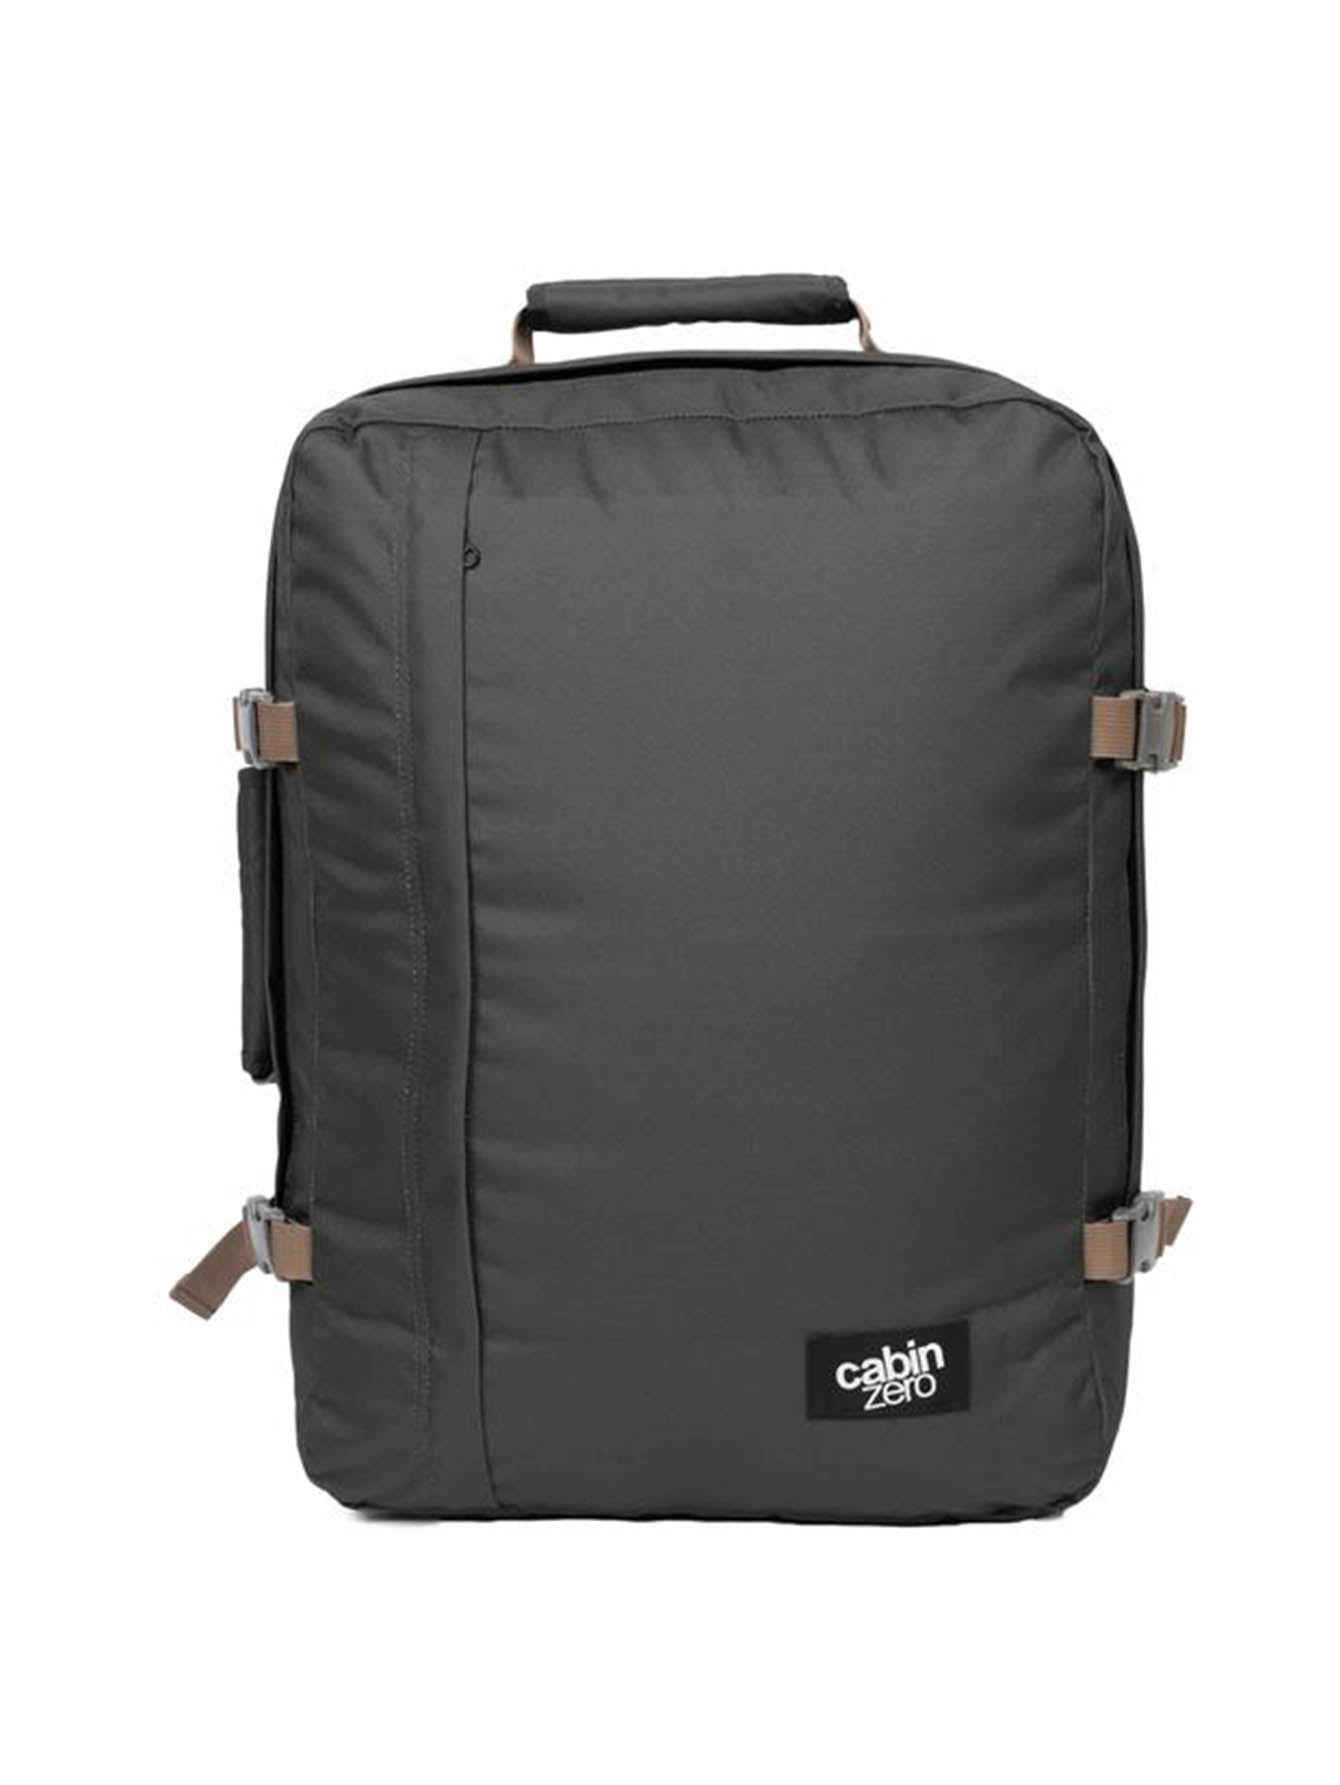 Cabinzero Classic 44L Ultra-Light Cabin Bag in Black Sand Color